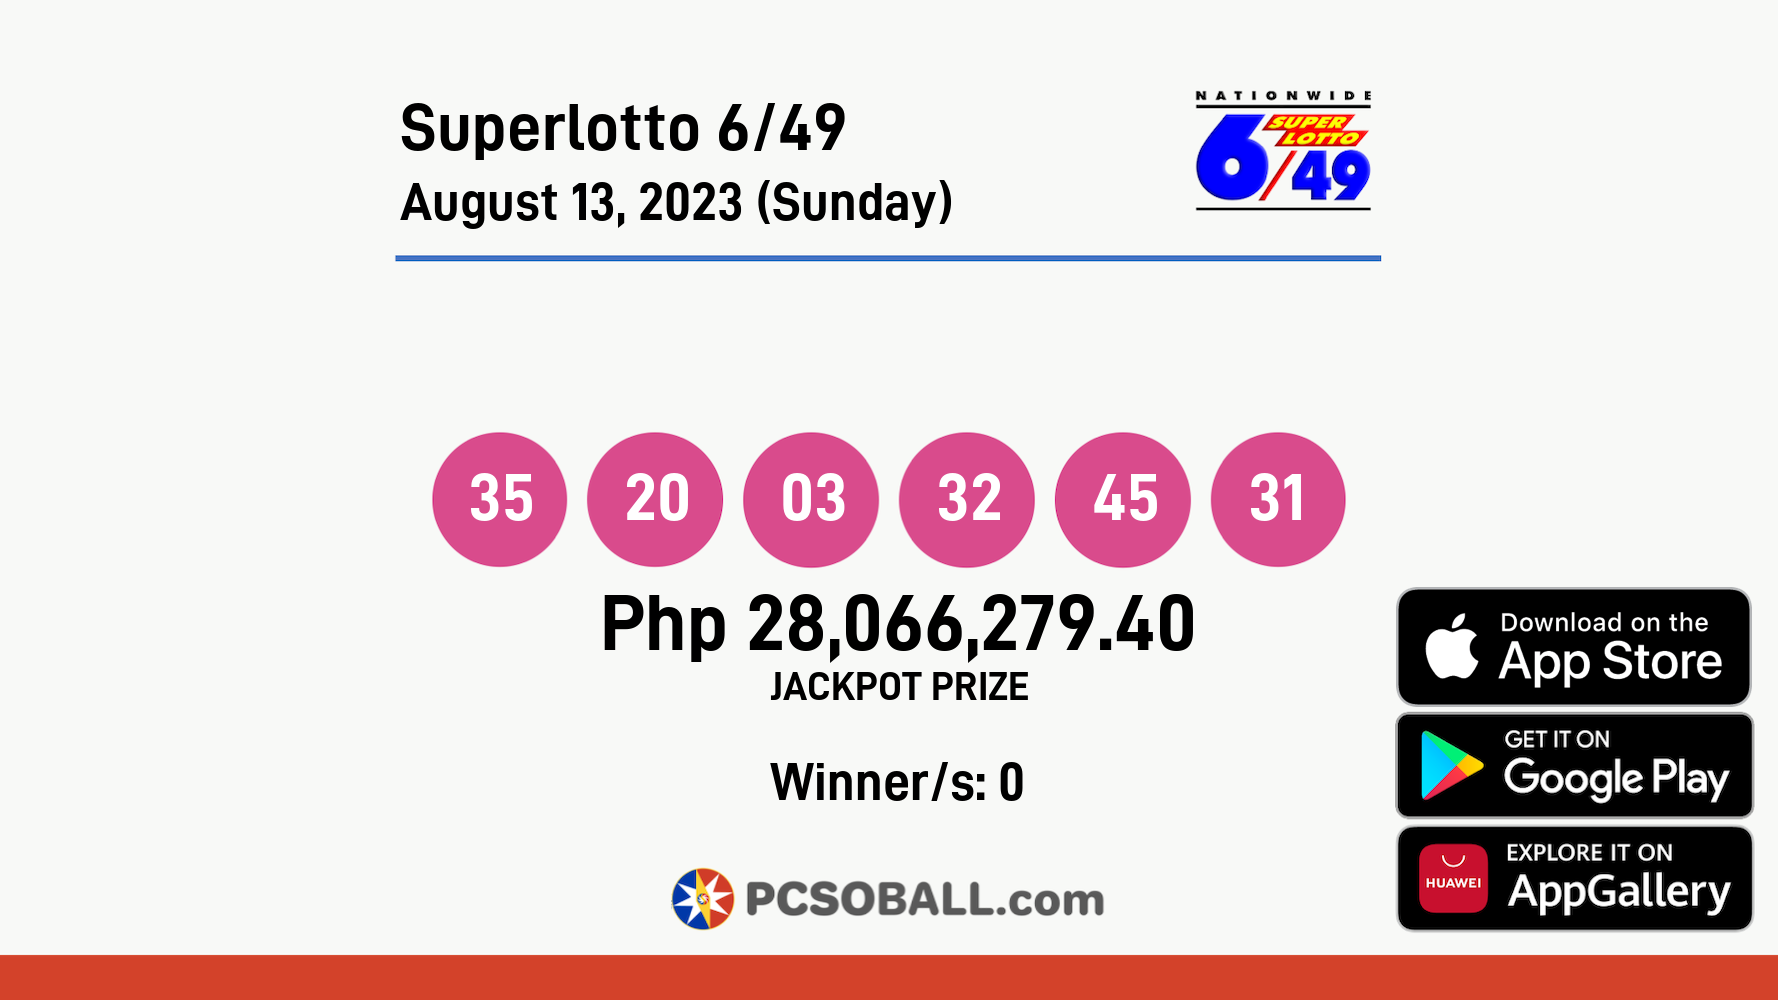 Superlotto 6/49 August 13, 2023 (Sunday) Result